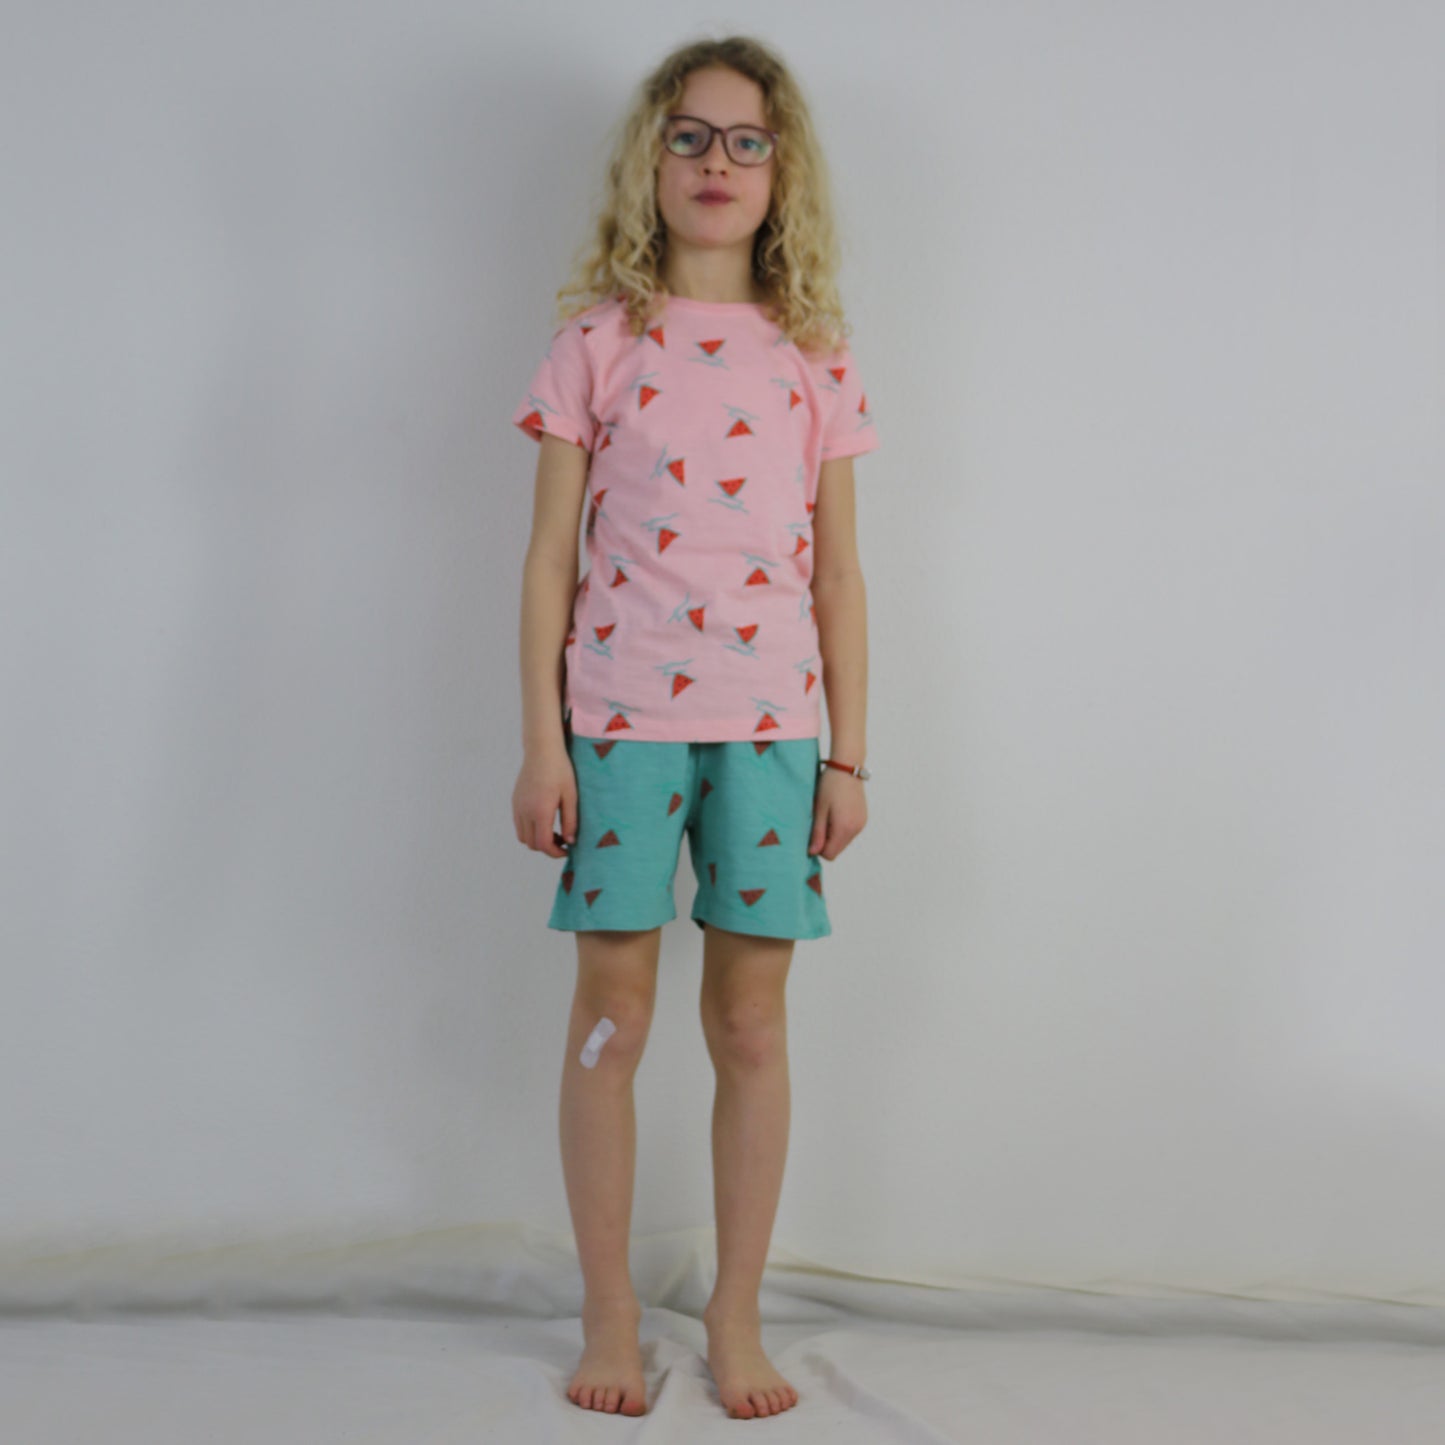 Wassermelonen-Boots-Mädchen-T - Shirt